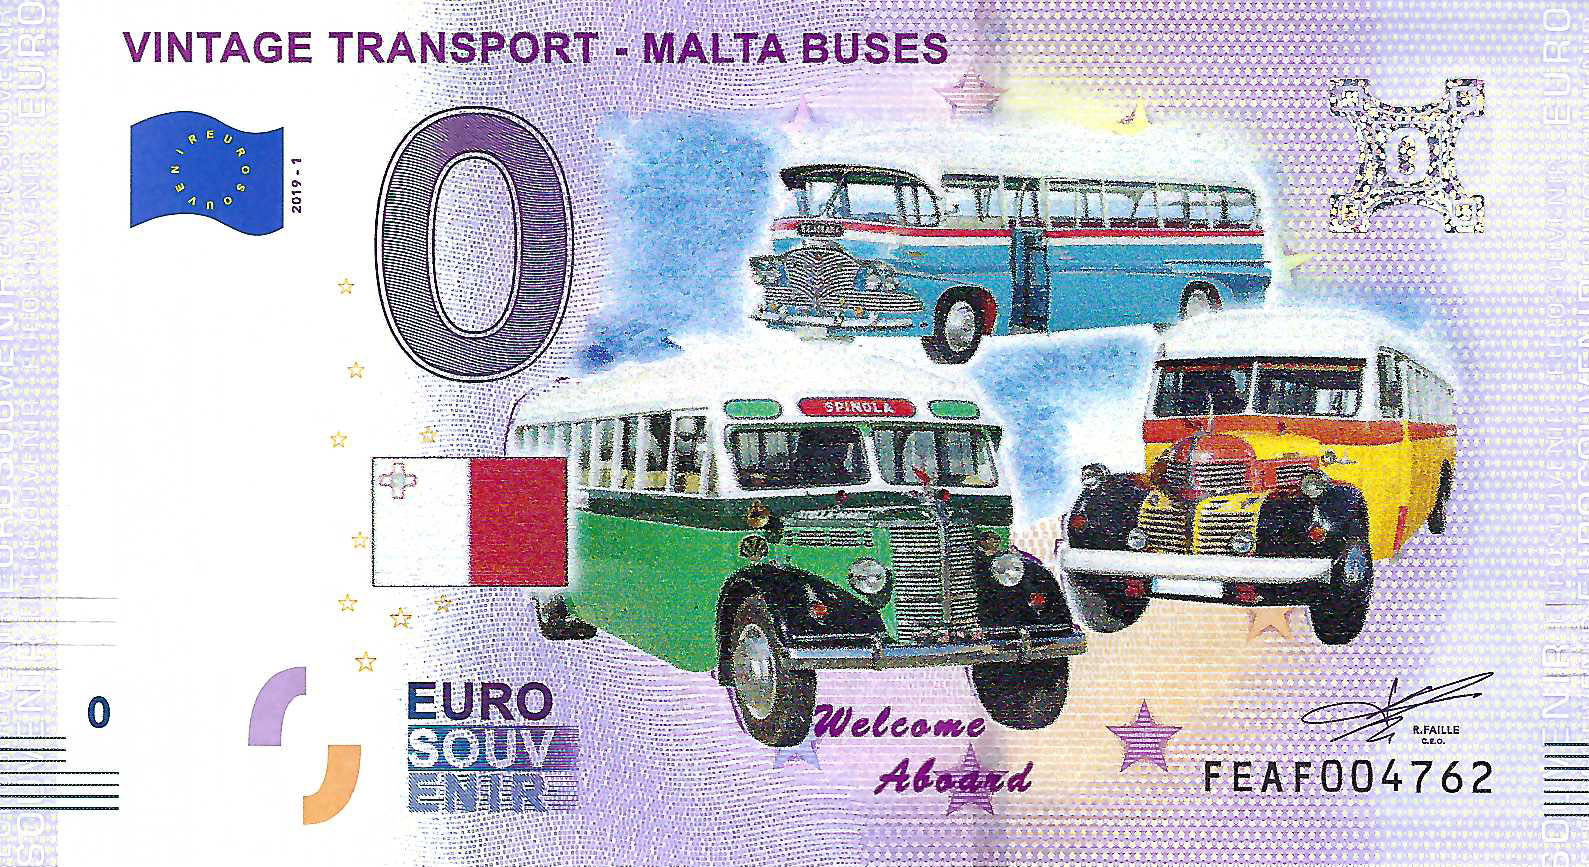 0 Euro biljet Malta 2019 - Vintage Transport Malta Buses KLEUR